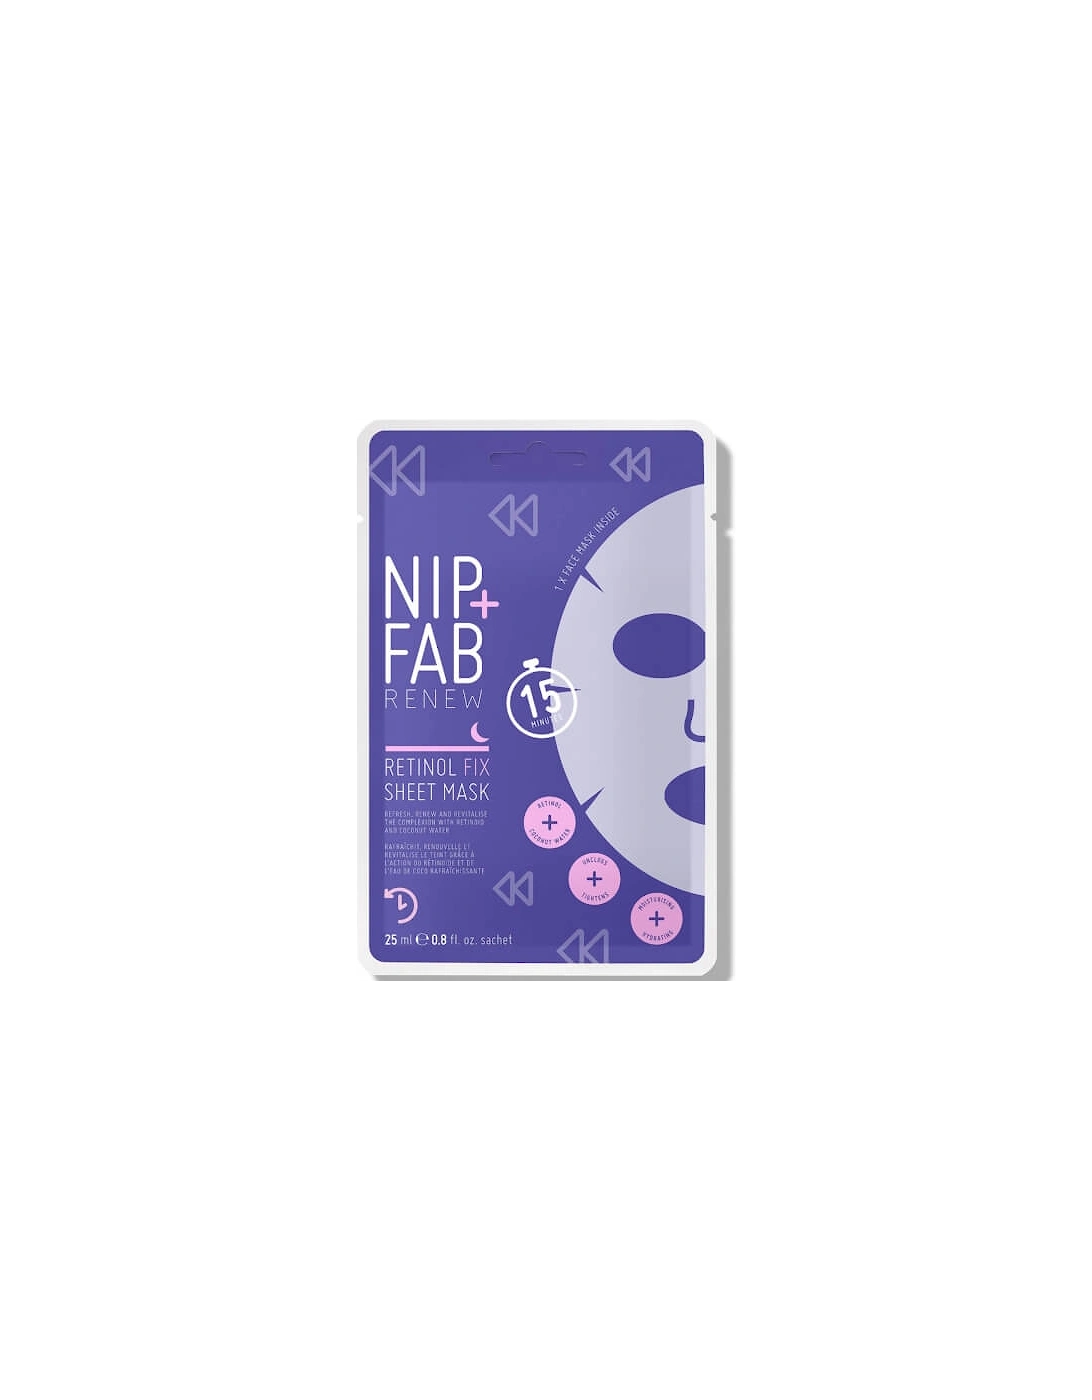 NIP+FAB Retinol Fix Sheet Mask 10g - NIP+FAB, 2 of 1